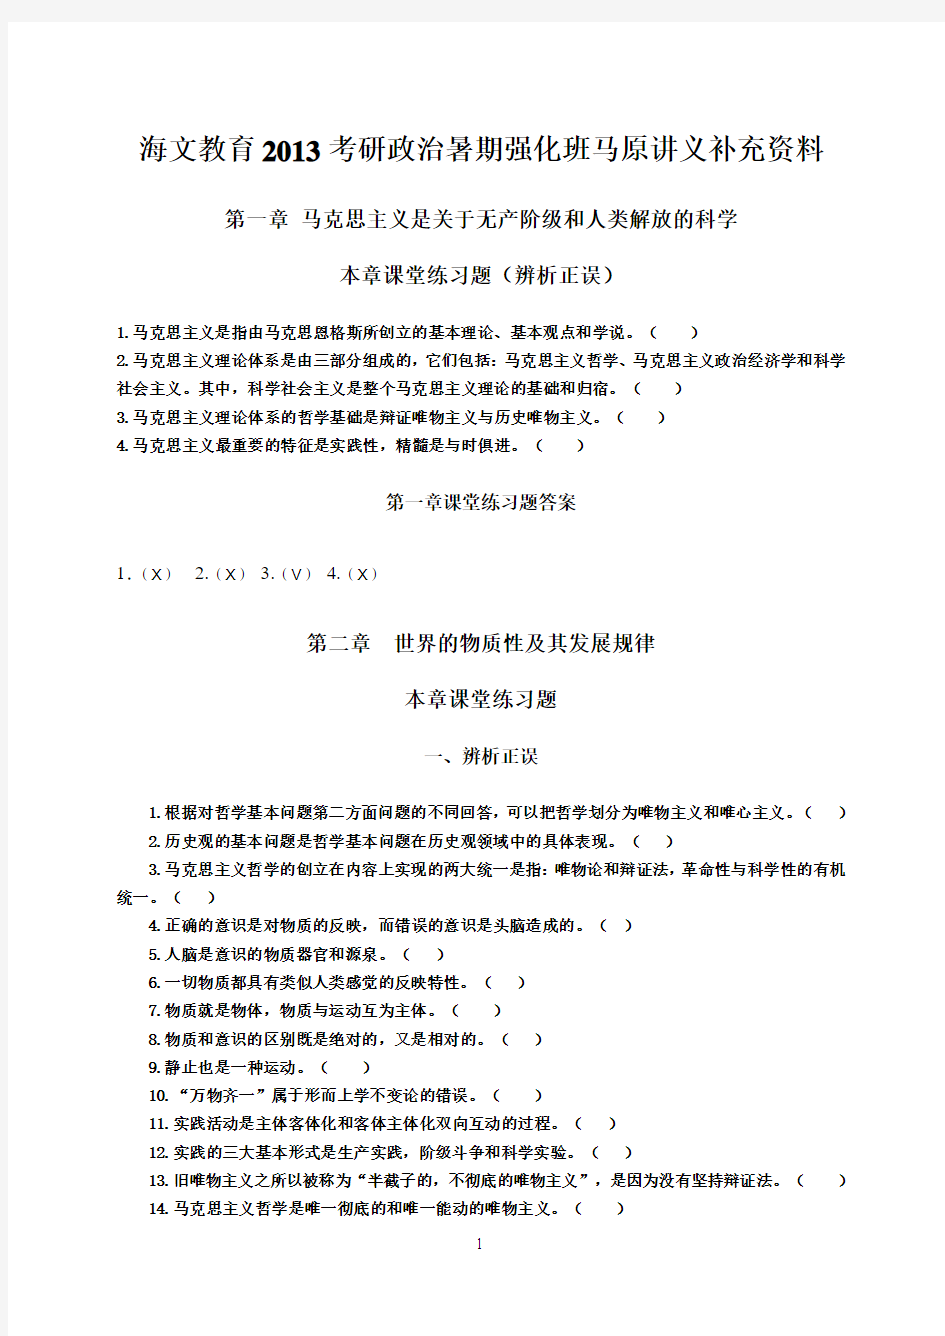 赵宇-海文教育2013考研政治暑期强化班马原讲义补充资料-7-2